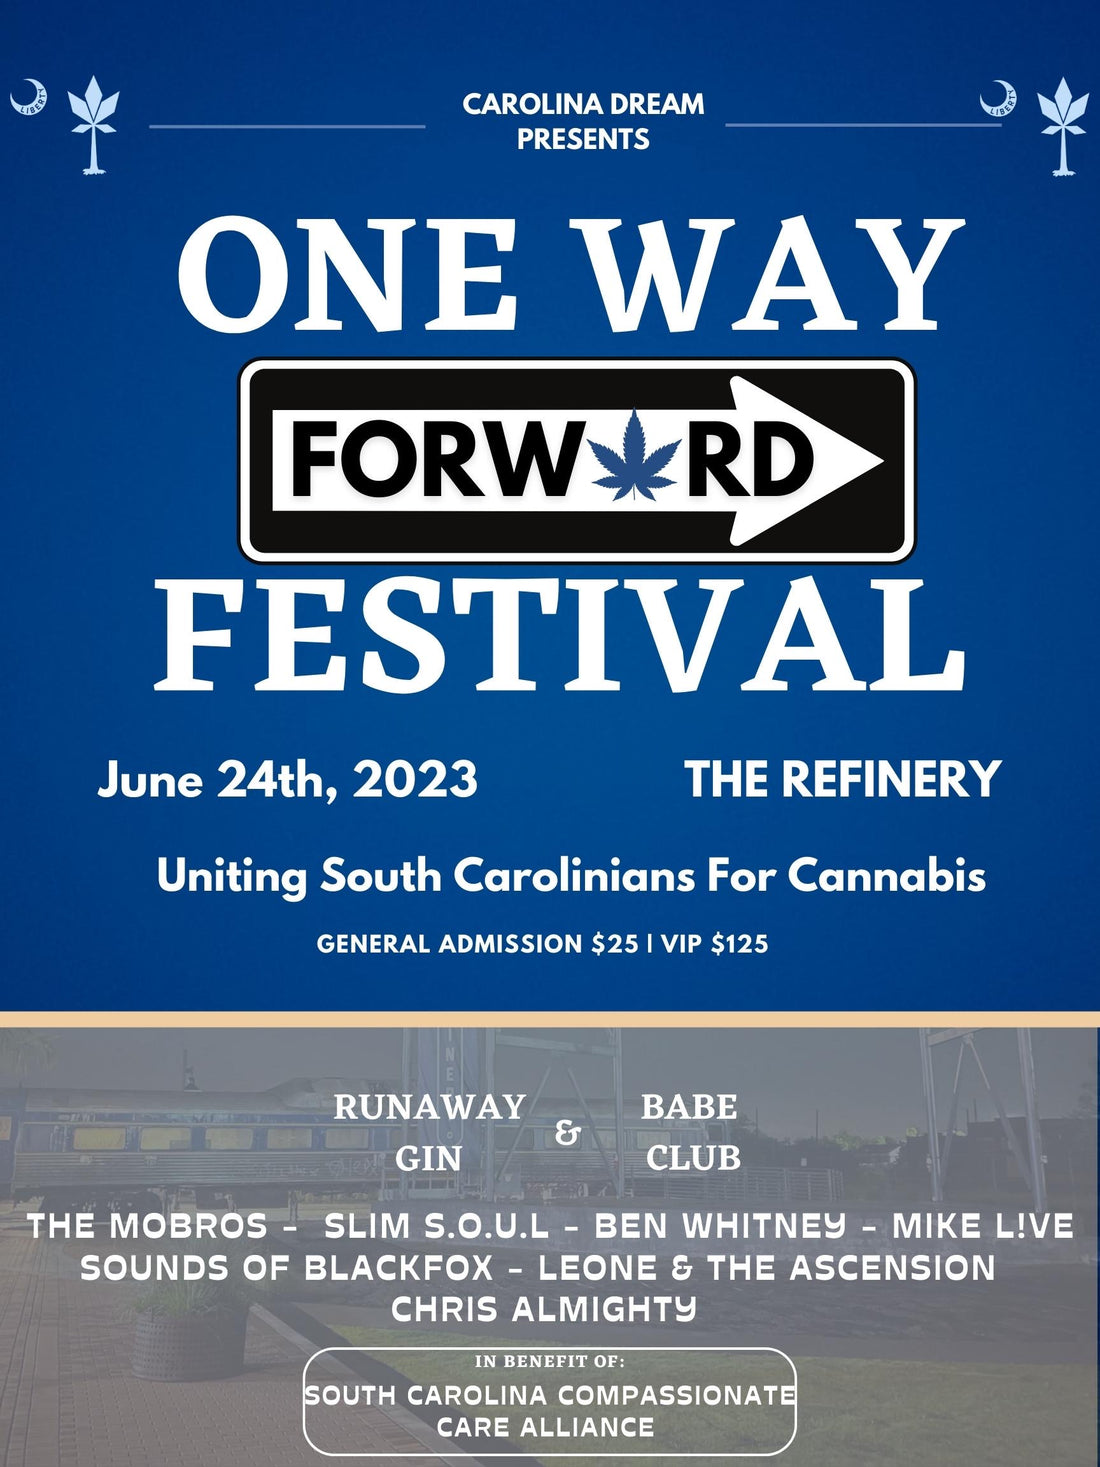 Carolina Dream presents One Way Forward Festival!